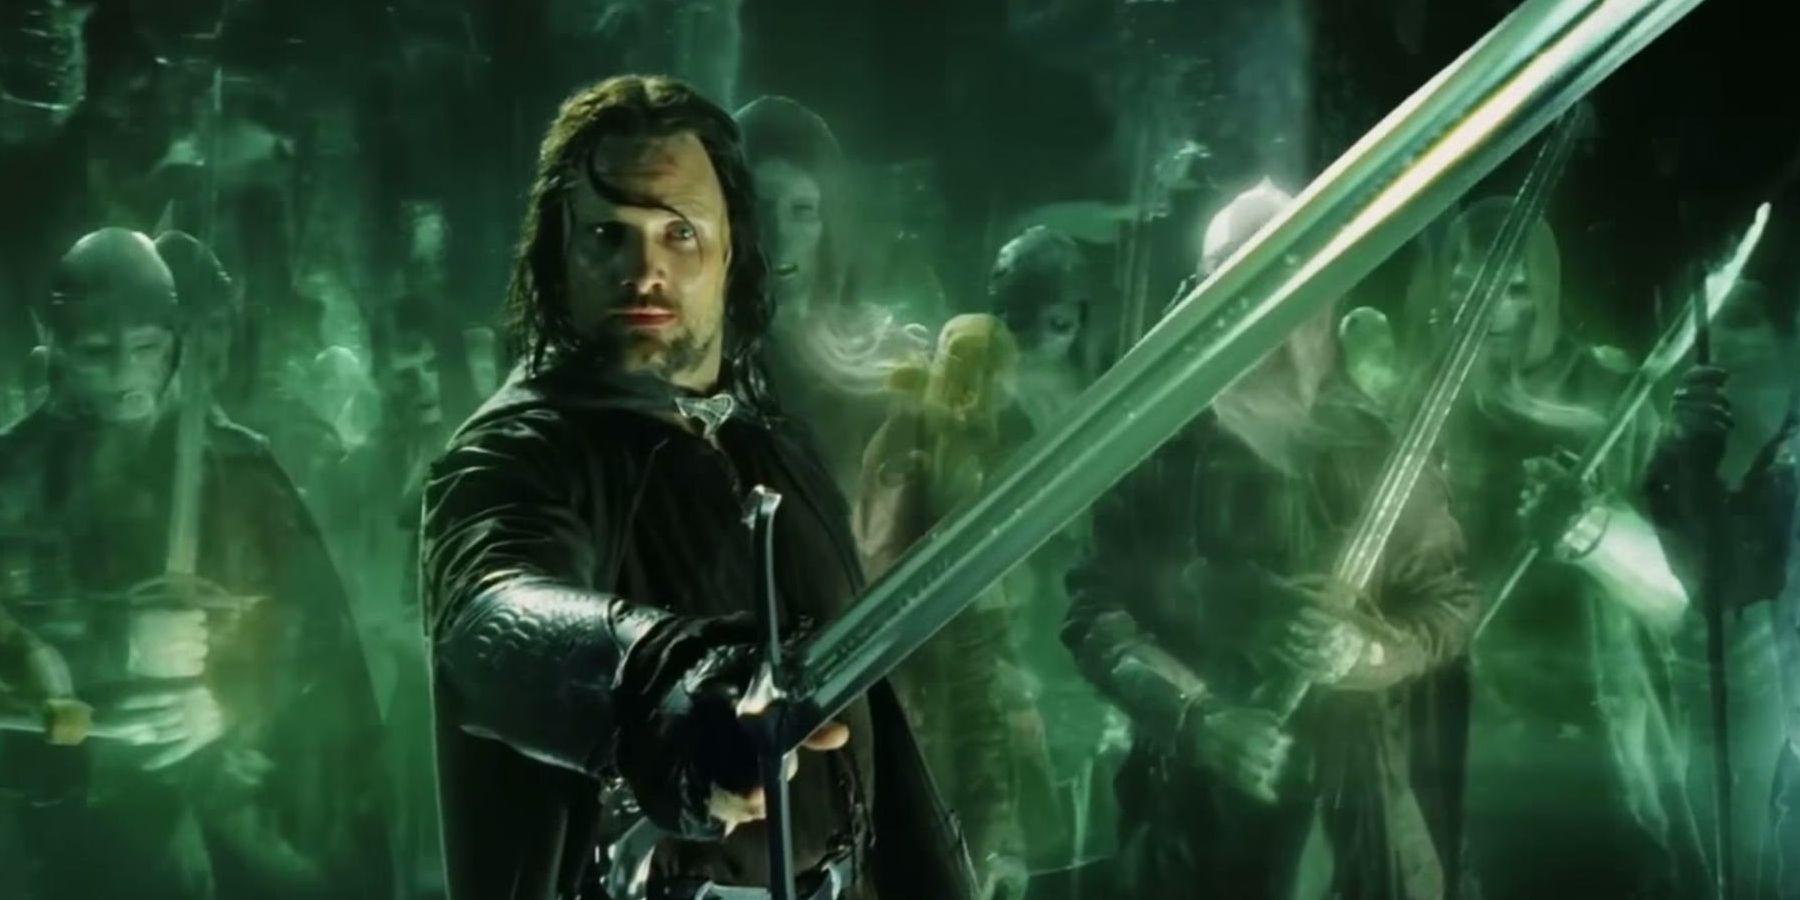 O Senhor dos Anéis: as 10 melhores citações de Aragorn nos filmes